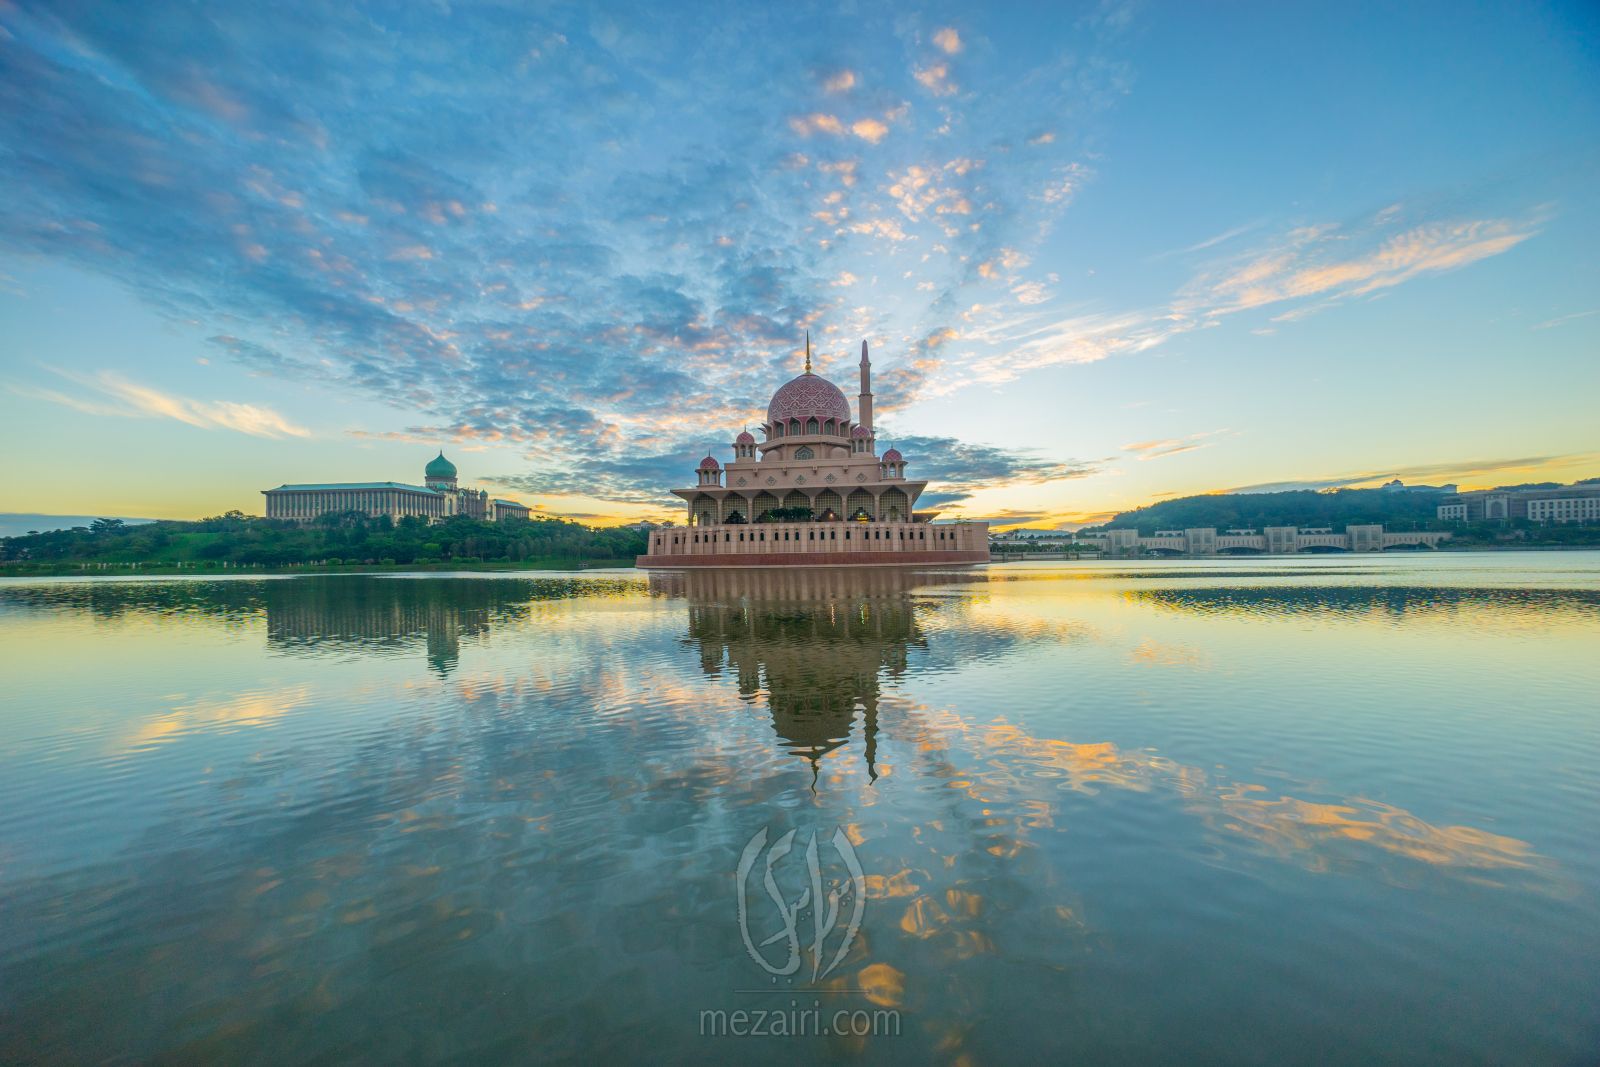 Sunrise @ Putra Mosque, Putrajaya